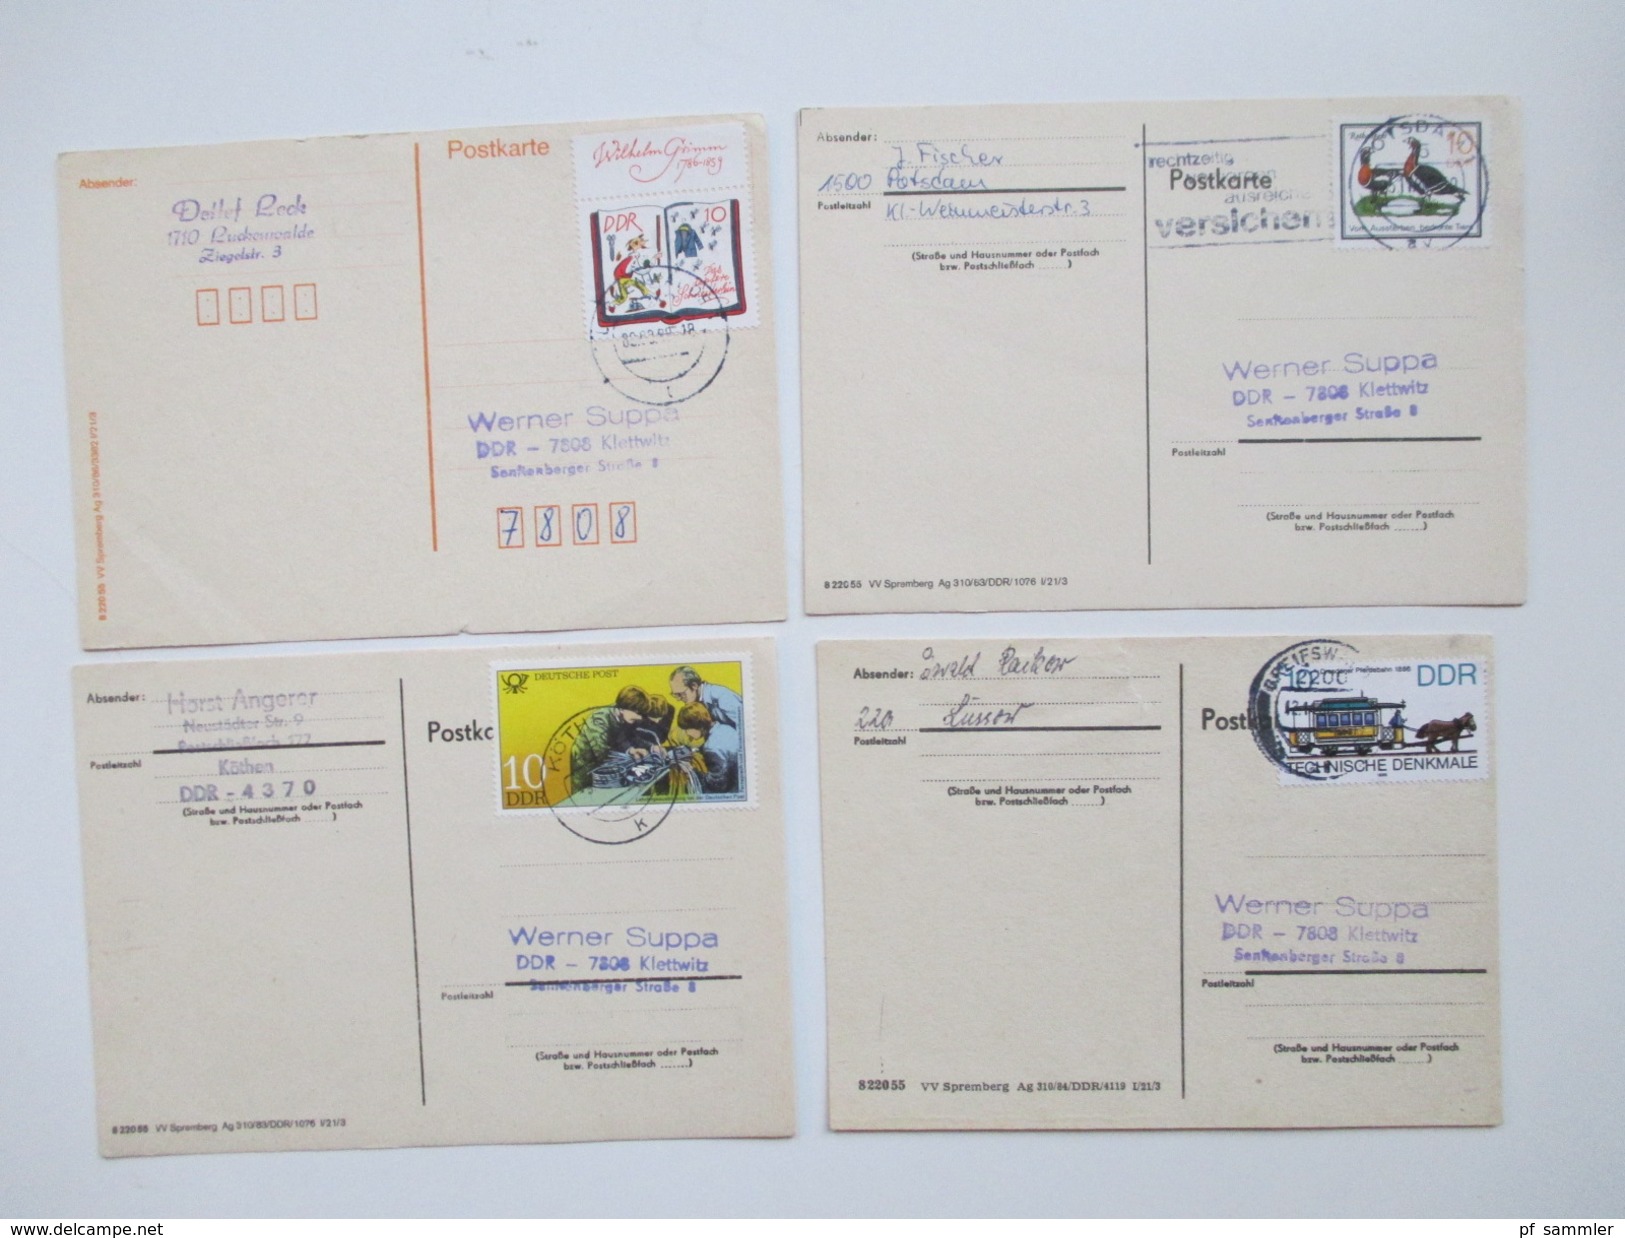 DDR 1986 - 88 Postkarten 215 Stück Sondermarken / Schmalspurbahn Zusammendrucke viele saubere Tagesstempel. Bedarf!